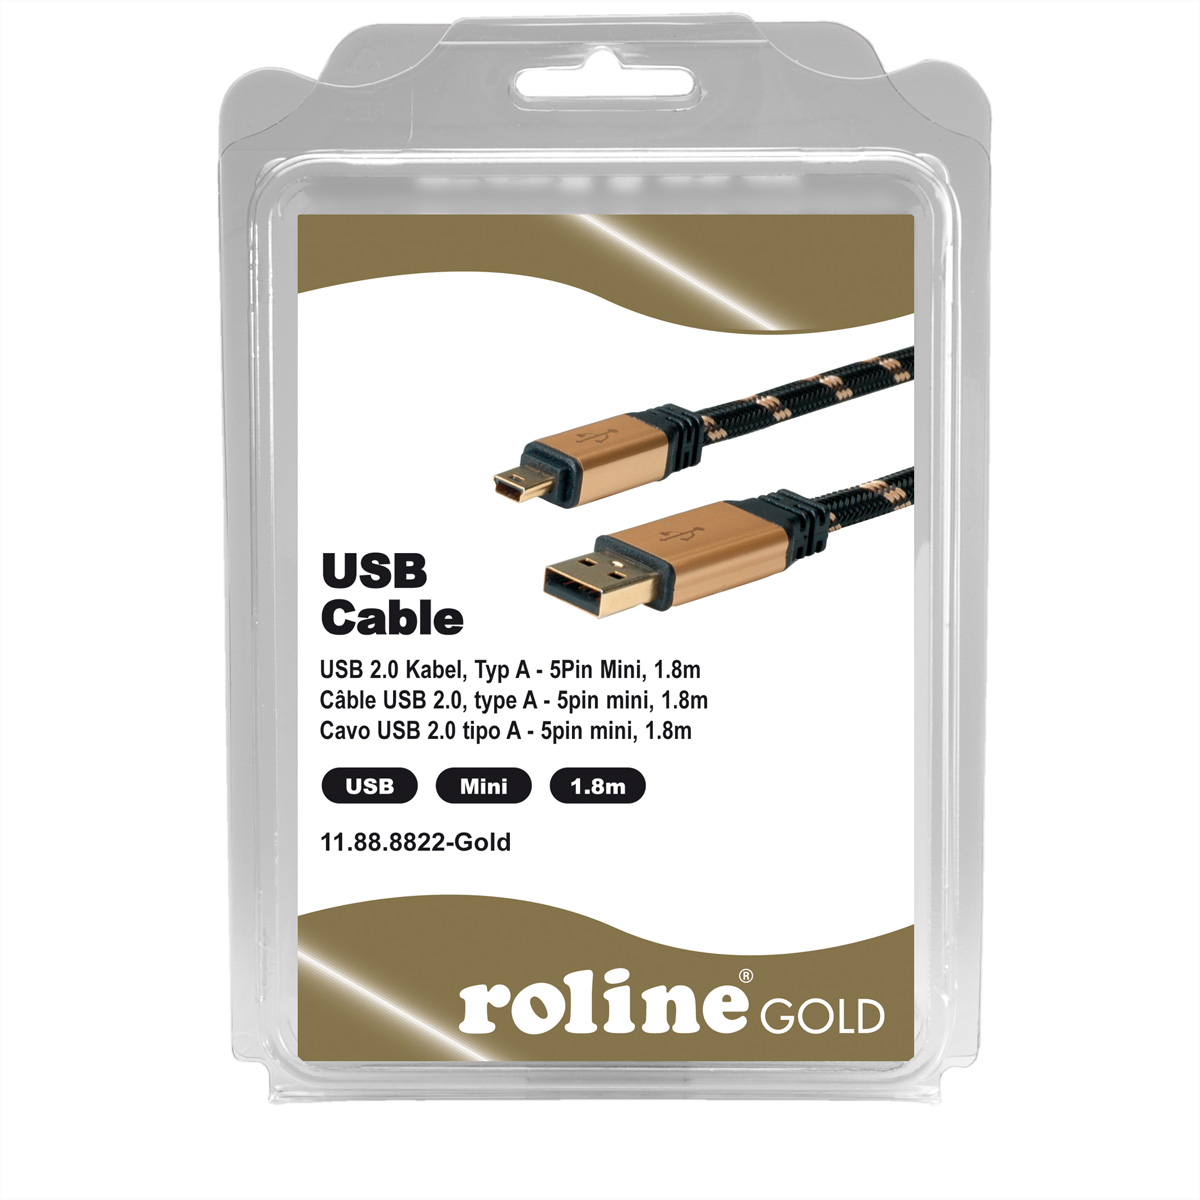 ROLINE GOLD USB 2.0 Kabel - Mini 2.0 A 5-Pin USB Kabel, Typ Mini